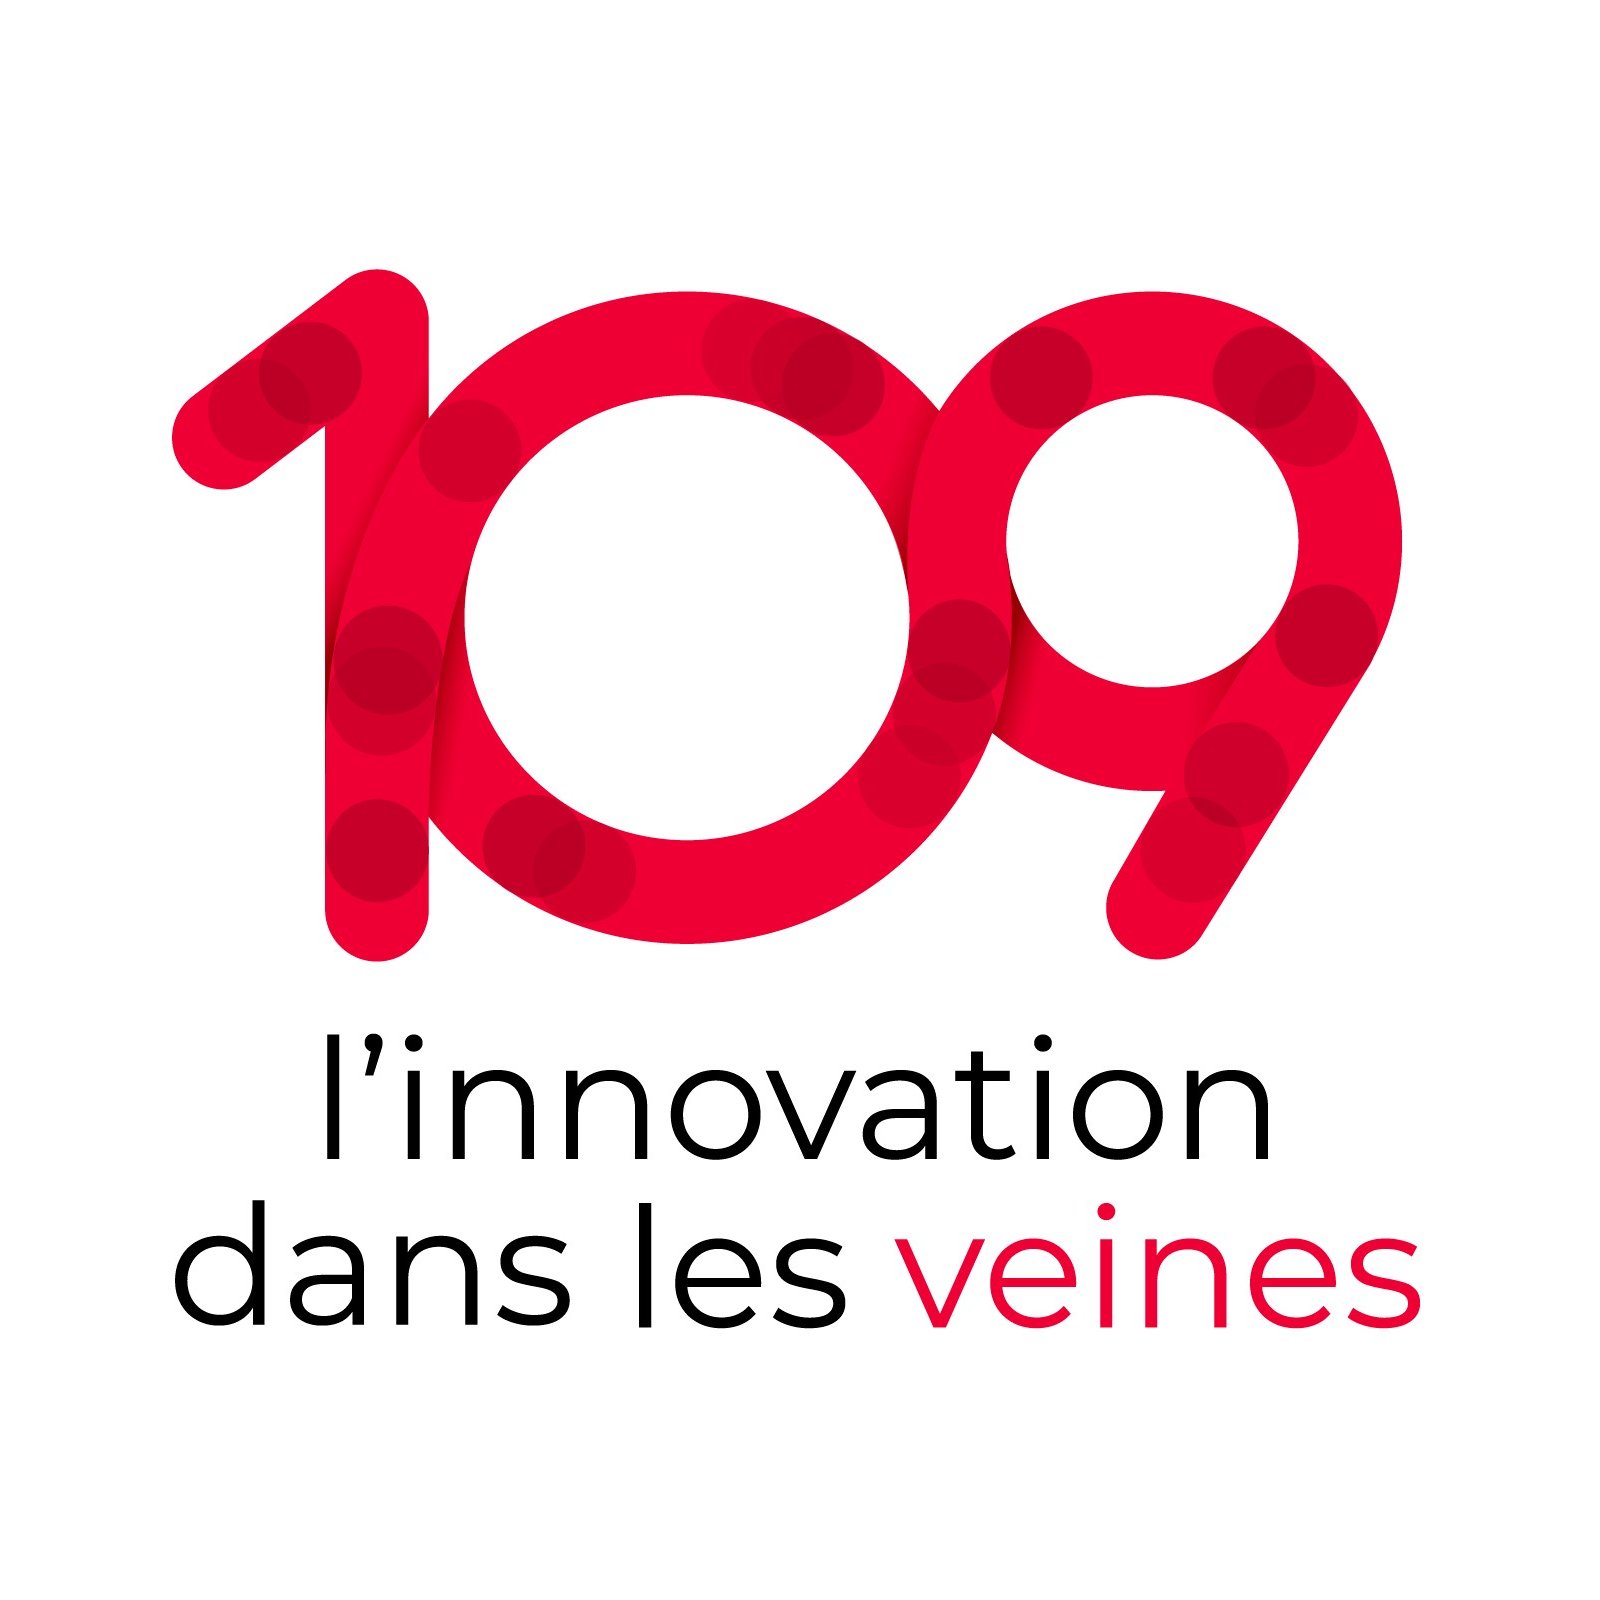 109 l'innovation dans les veines booste la mise en place d'innovations essentielles pour votre entreprise.